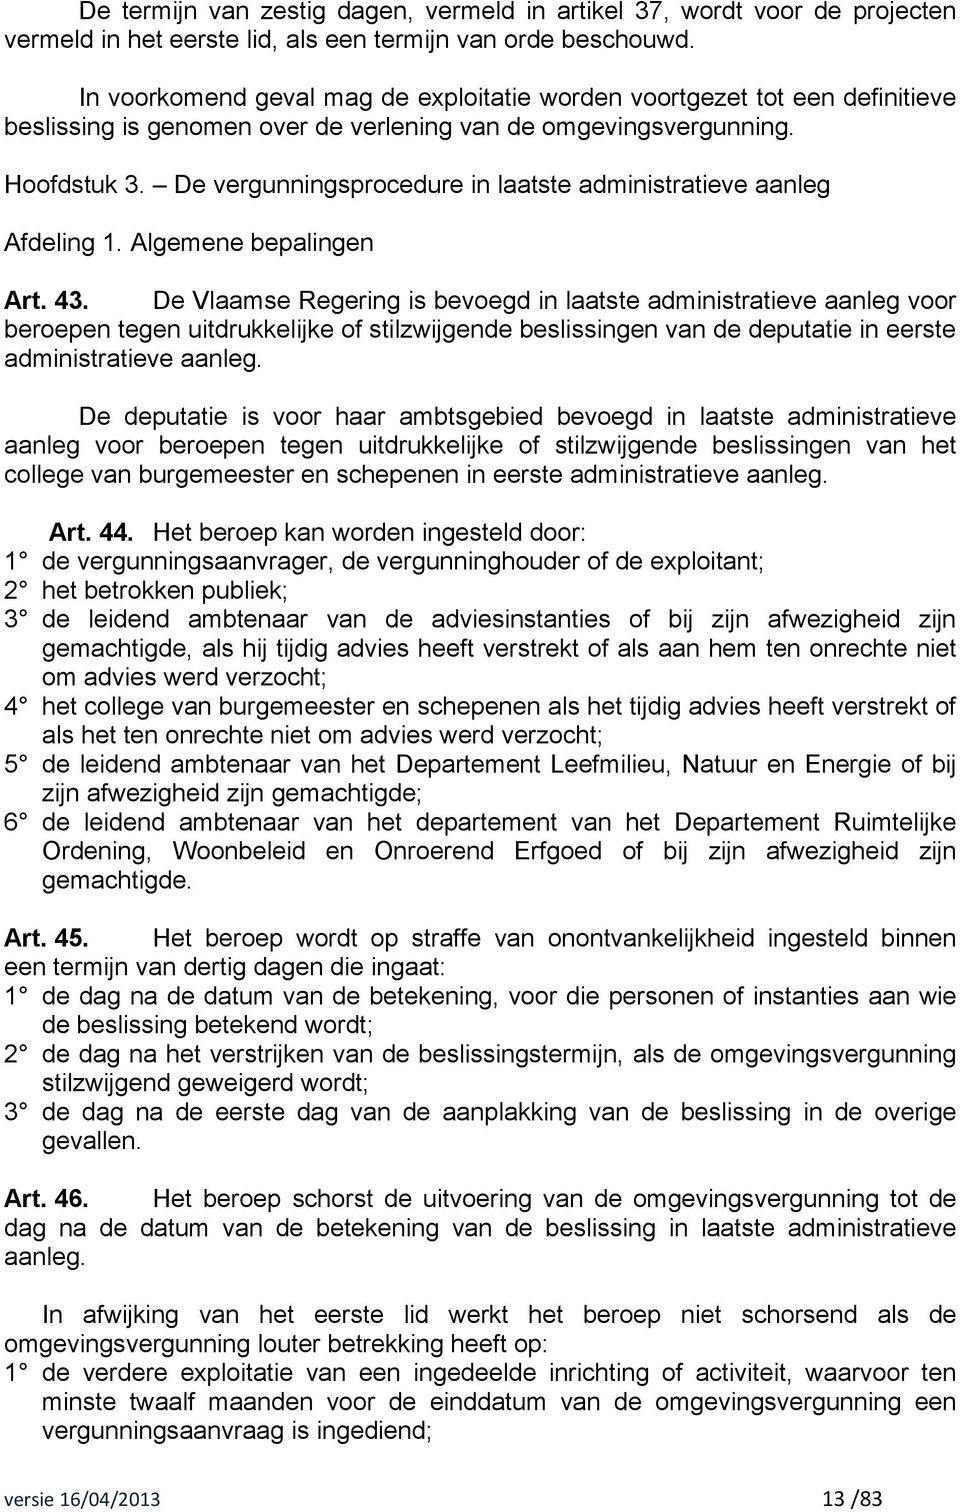 De vergunningsprocedure in laatste administratieve aanleg Afdeling 1. Algemene bepalingen Art. 43.